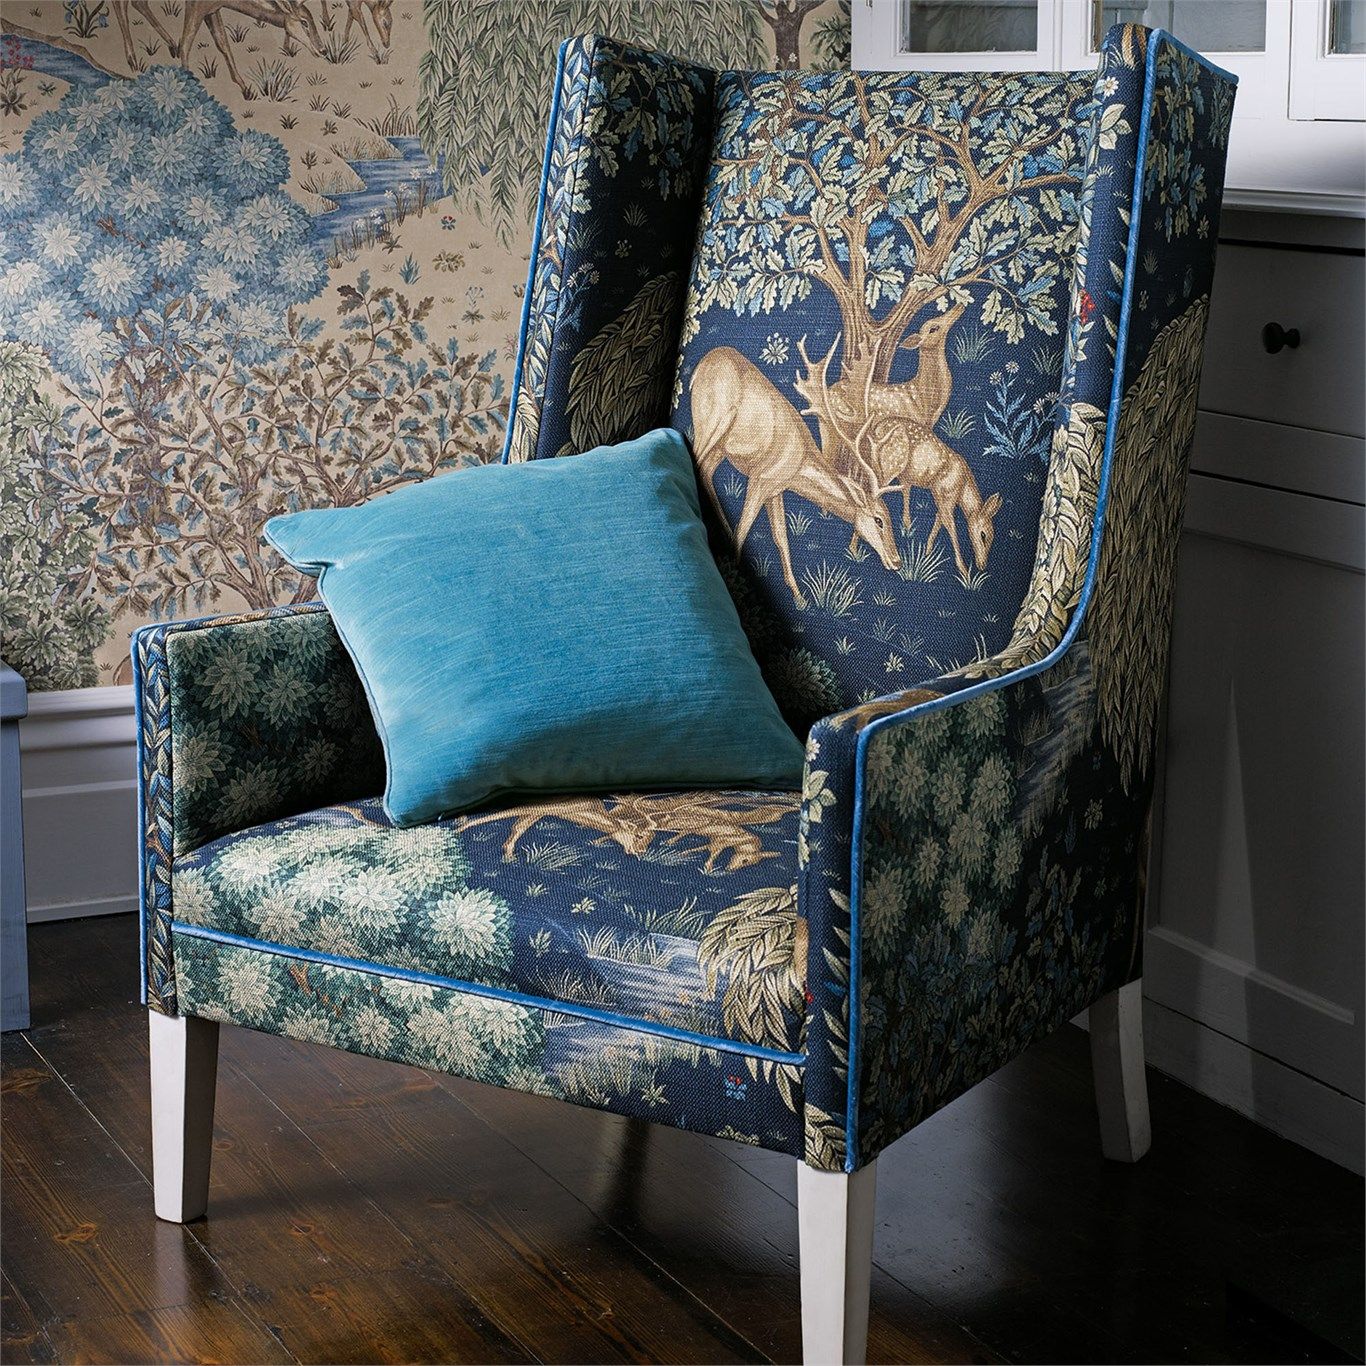 패브릭 벽지 영국,가구,푸른,의자,방,아쿠아